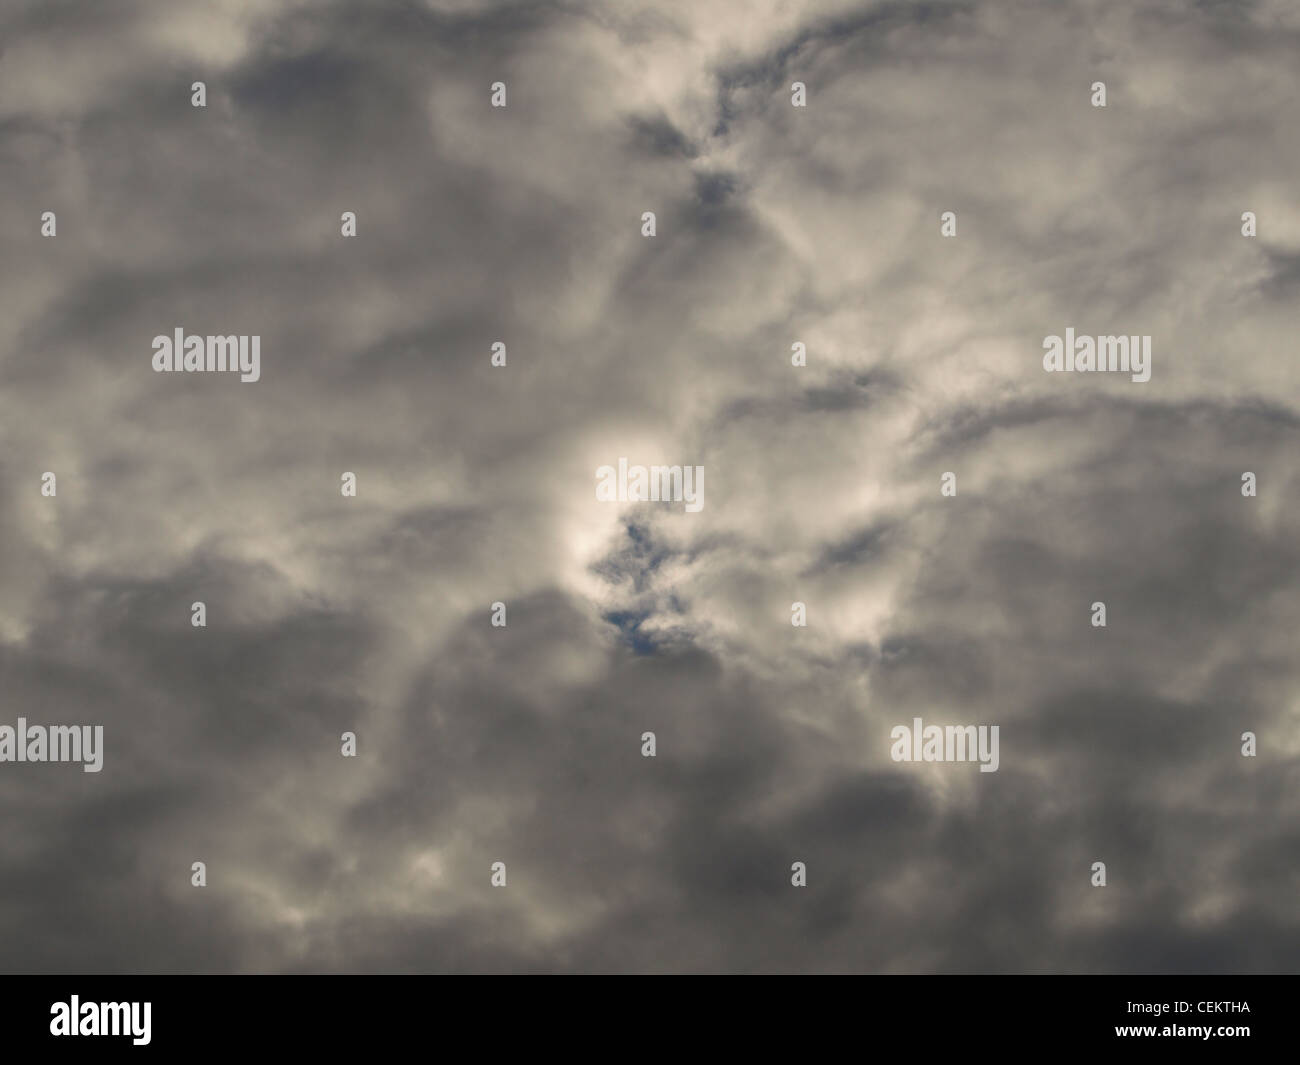 Mistica grigio nuvole / graue müstische Wolken Foto Stock